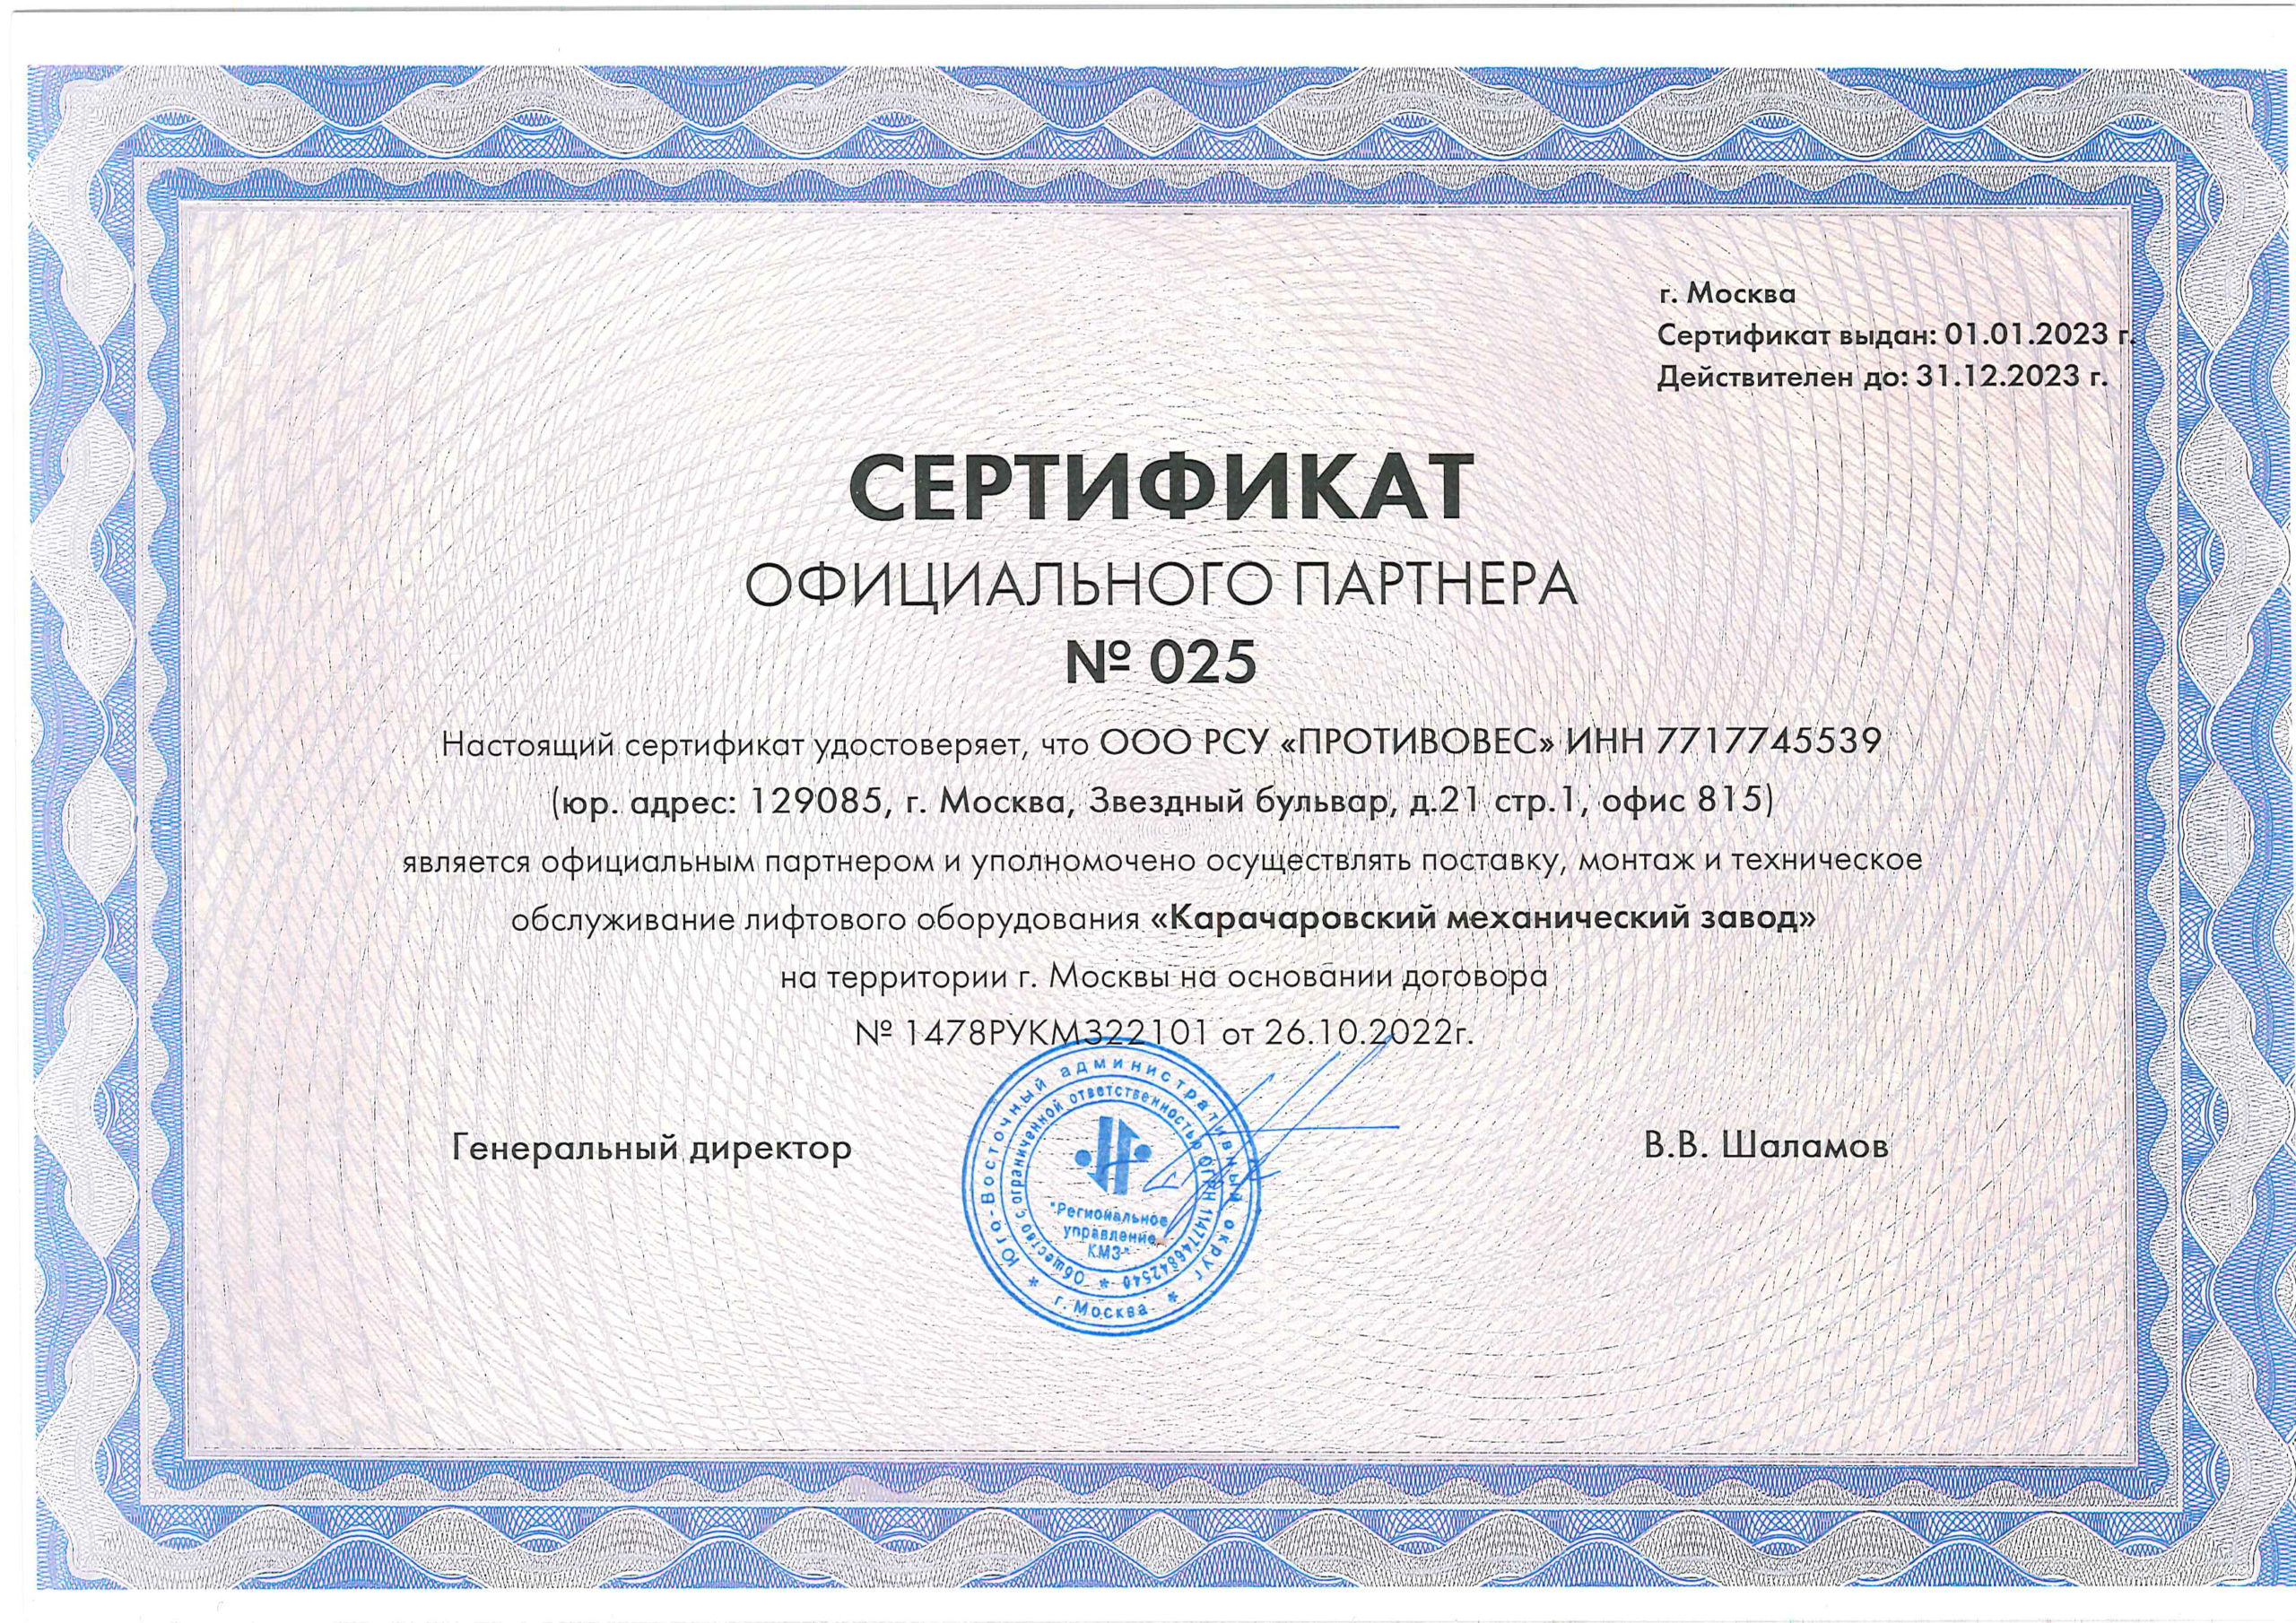 фото сертификата официального партнера Карачаровского механического завода (КМЗ)